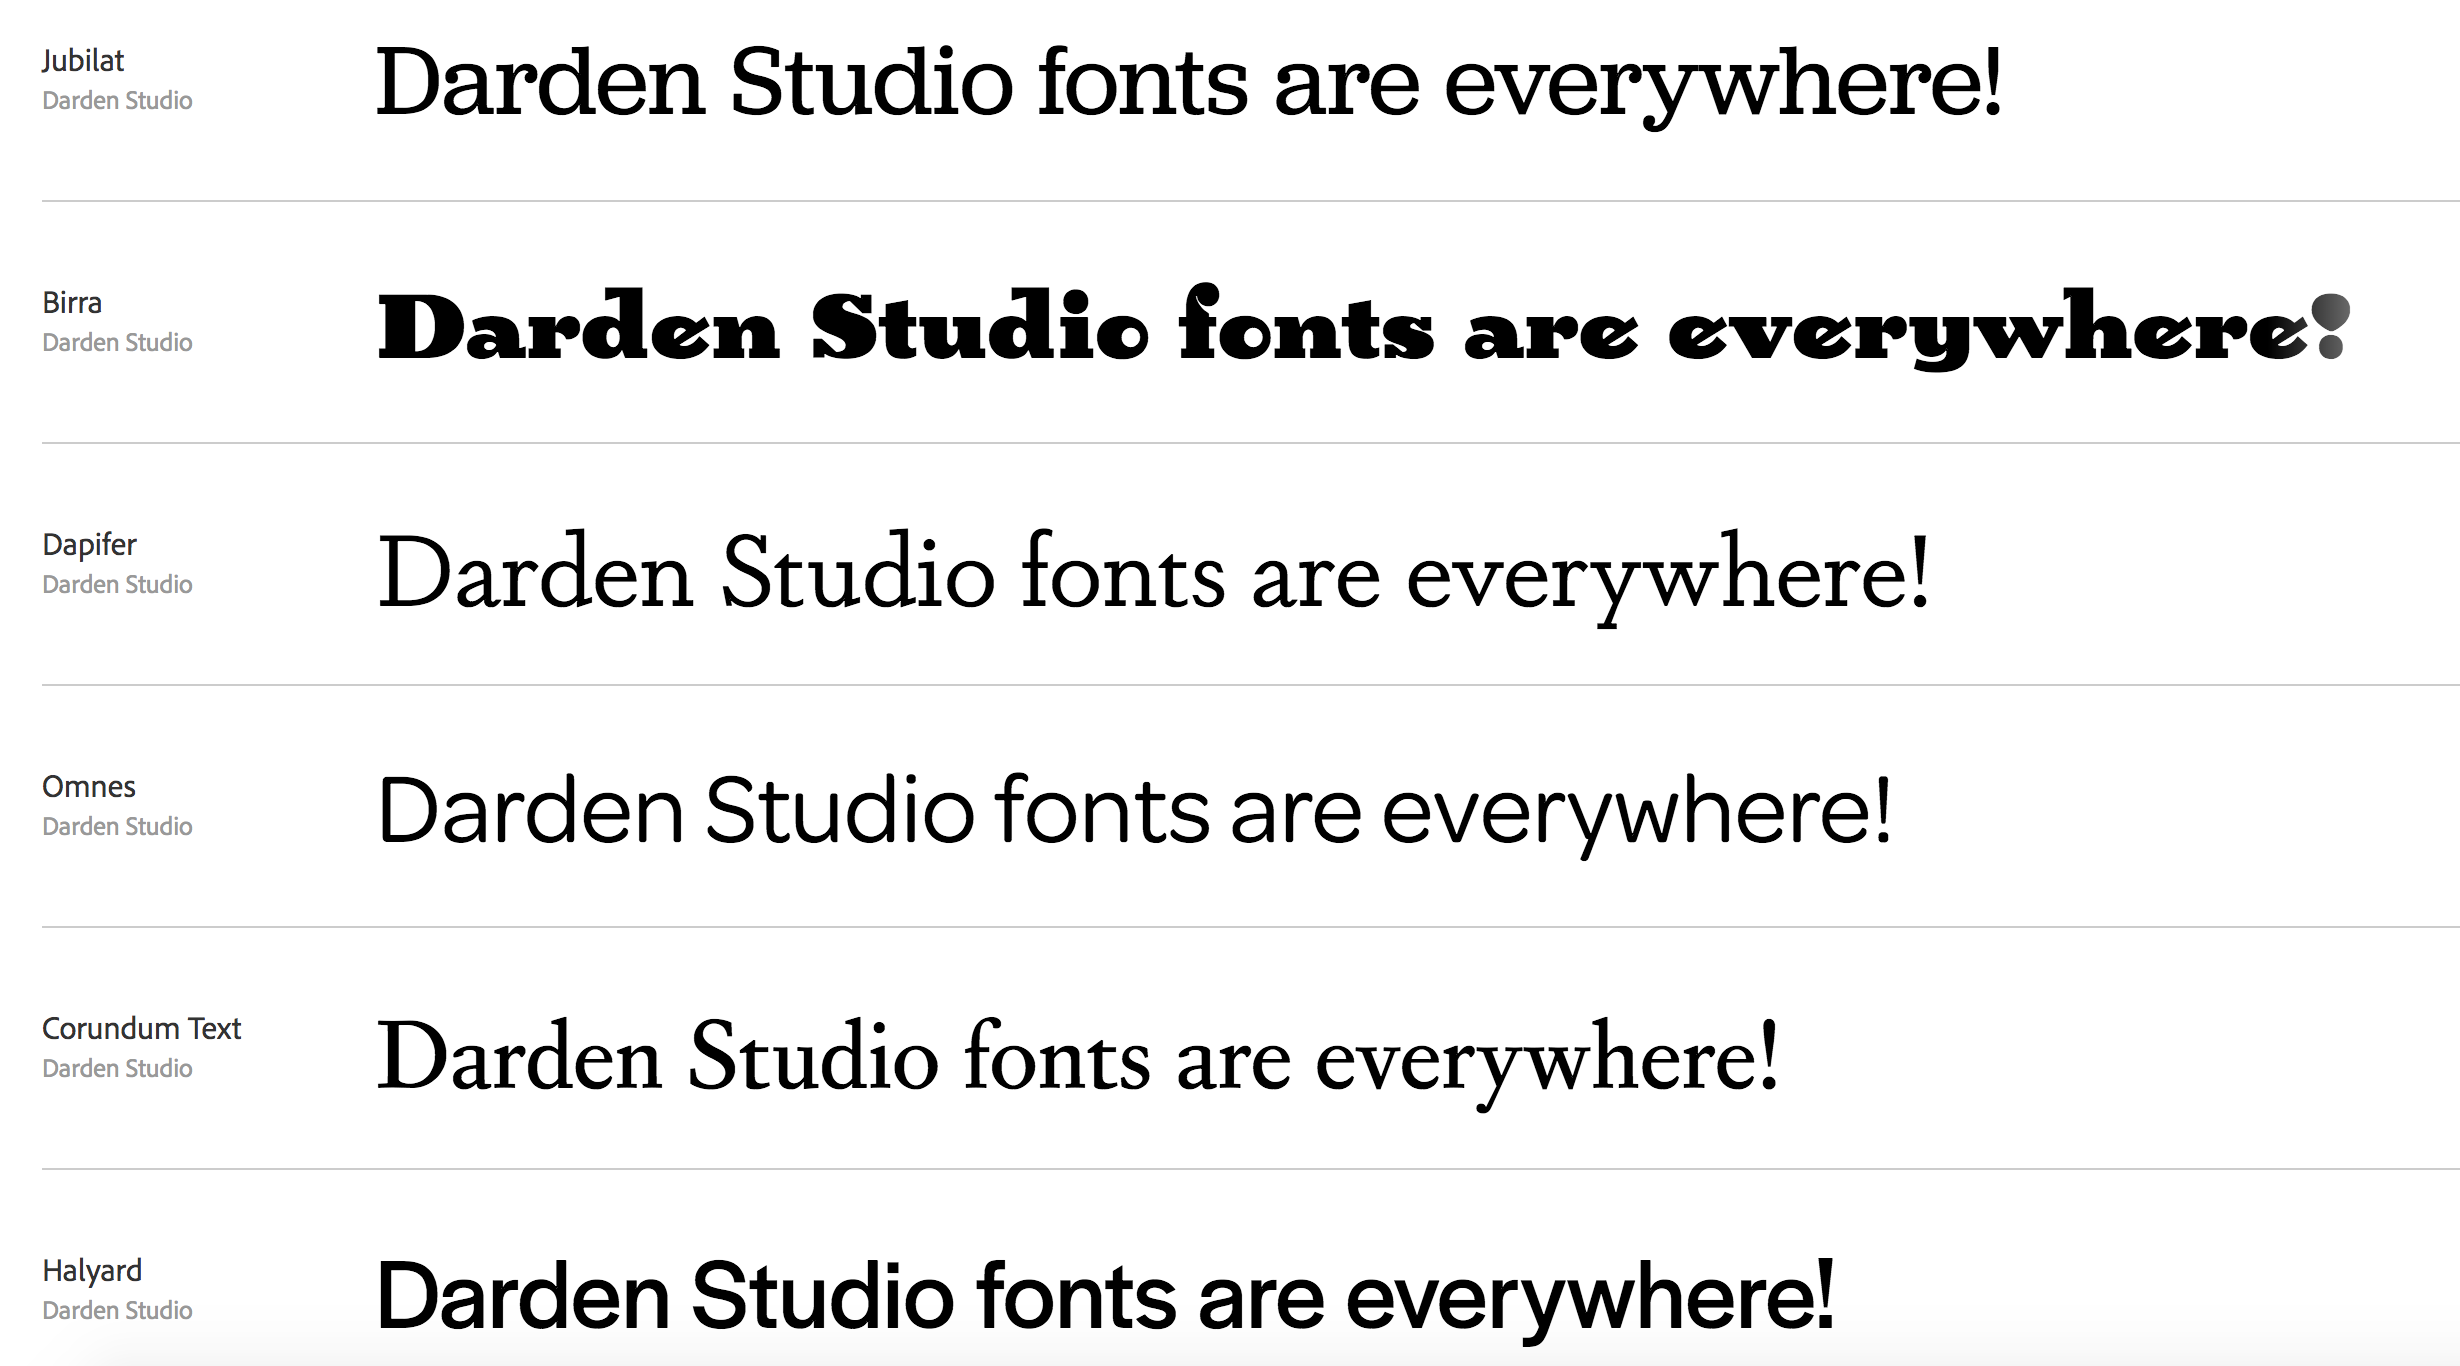 List of Darden Studio fonts in the Typekit library